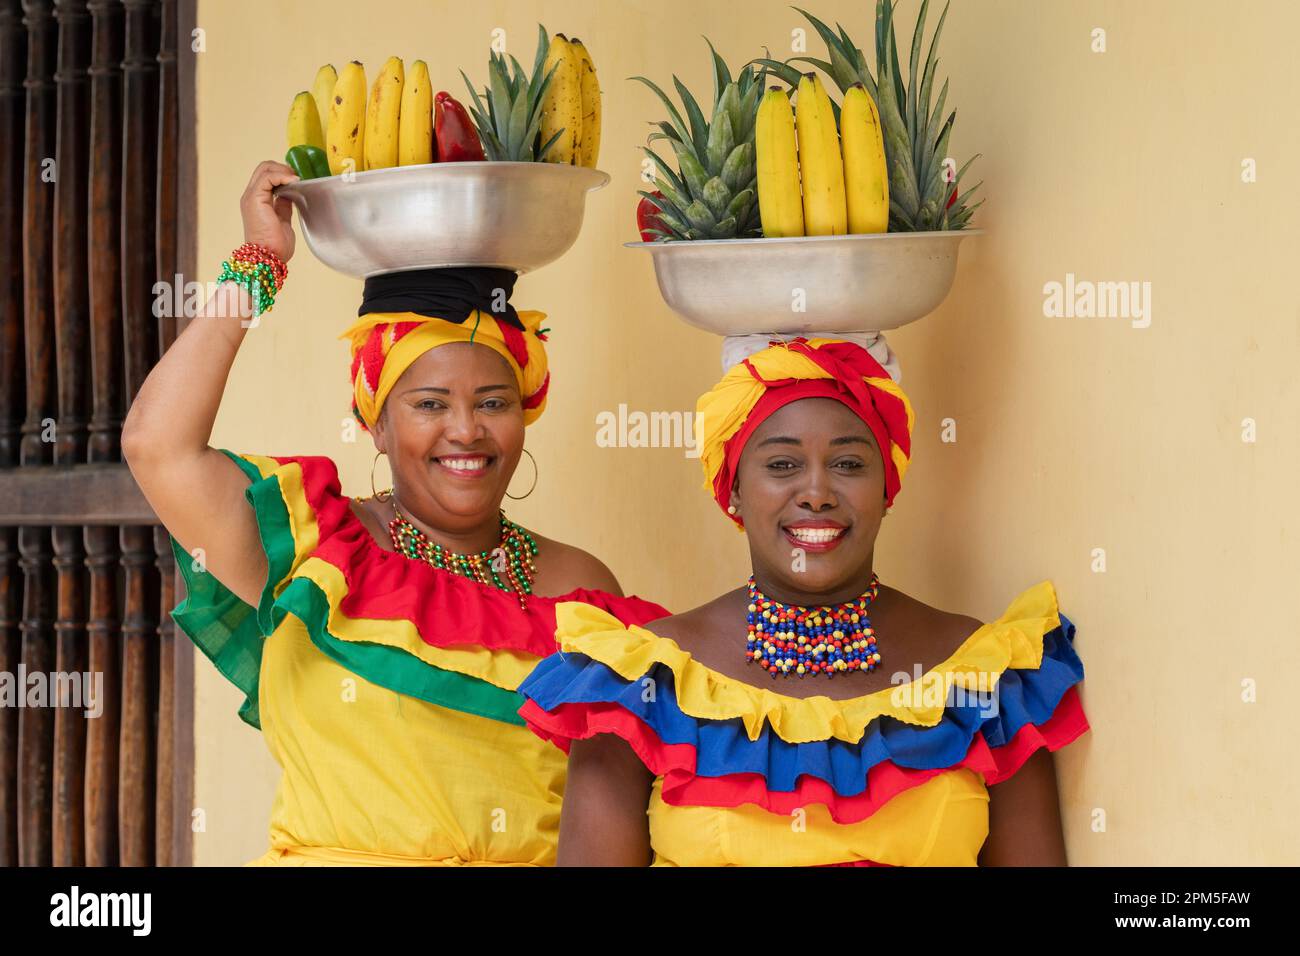 Les vendeurs de rue de fruits frais de Palenquera souriants dans la vieille ville de Carthagène, en Colombie. Des femmes afro-colombiennes gaies en costumes traditionnels. Banque D'Images